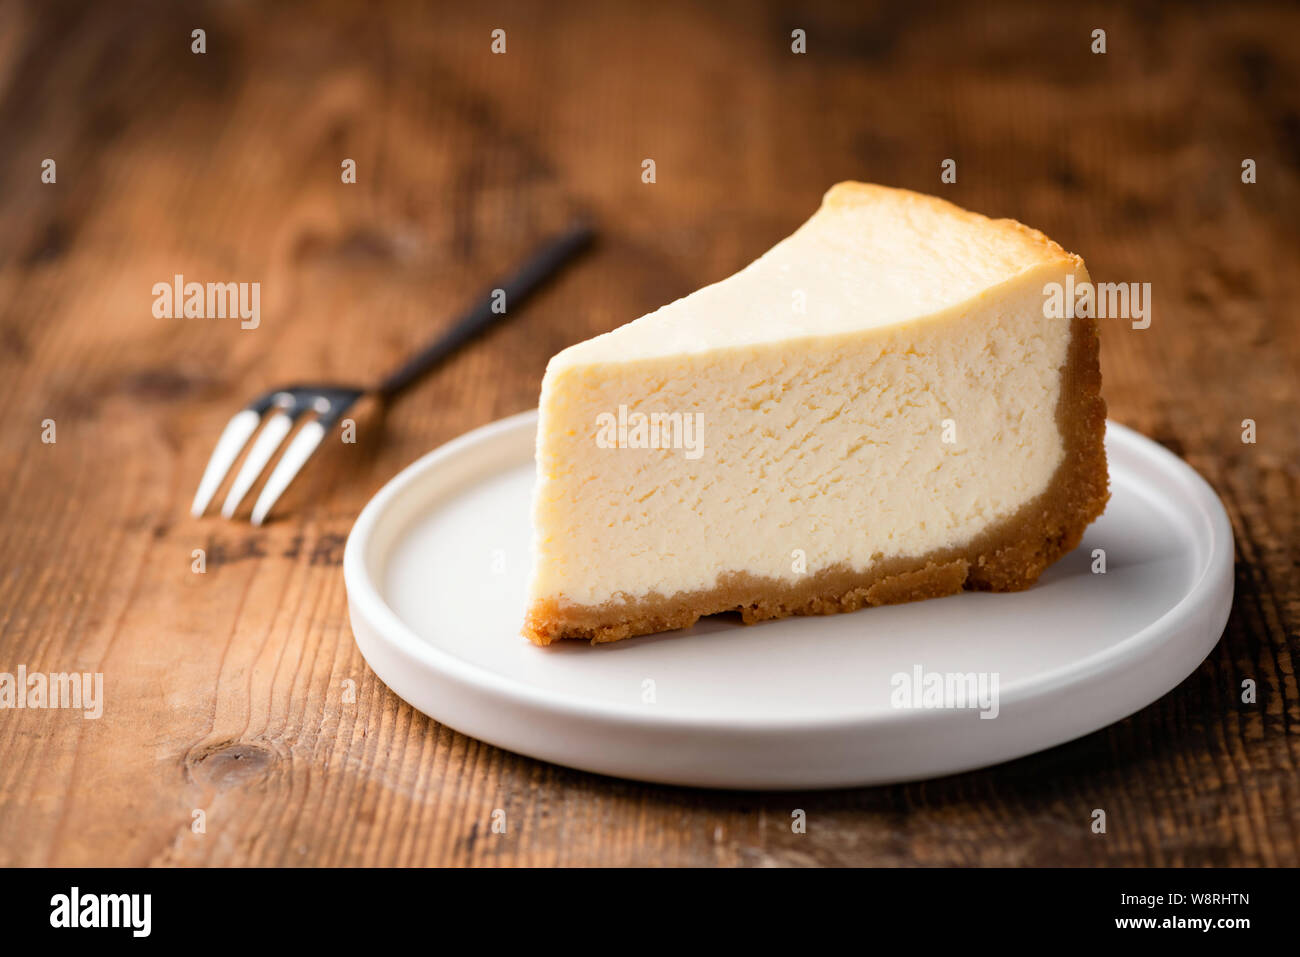 Tarta de queso estilo Nueva York slice, la clásica tarta de queso sobre fondo de madera. Rebanada de pastel sabroso sobre placa blanca servido con horquilla de postre Foto de stock